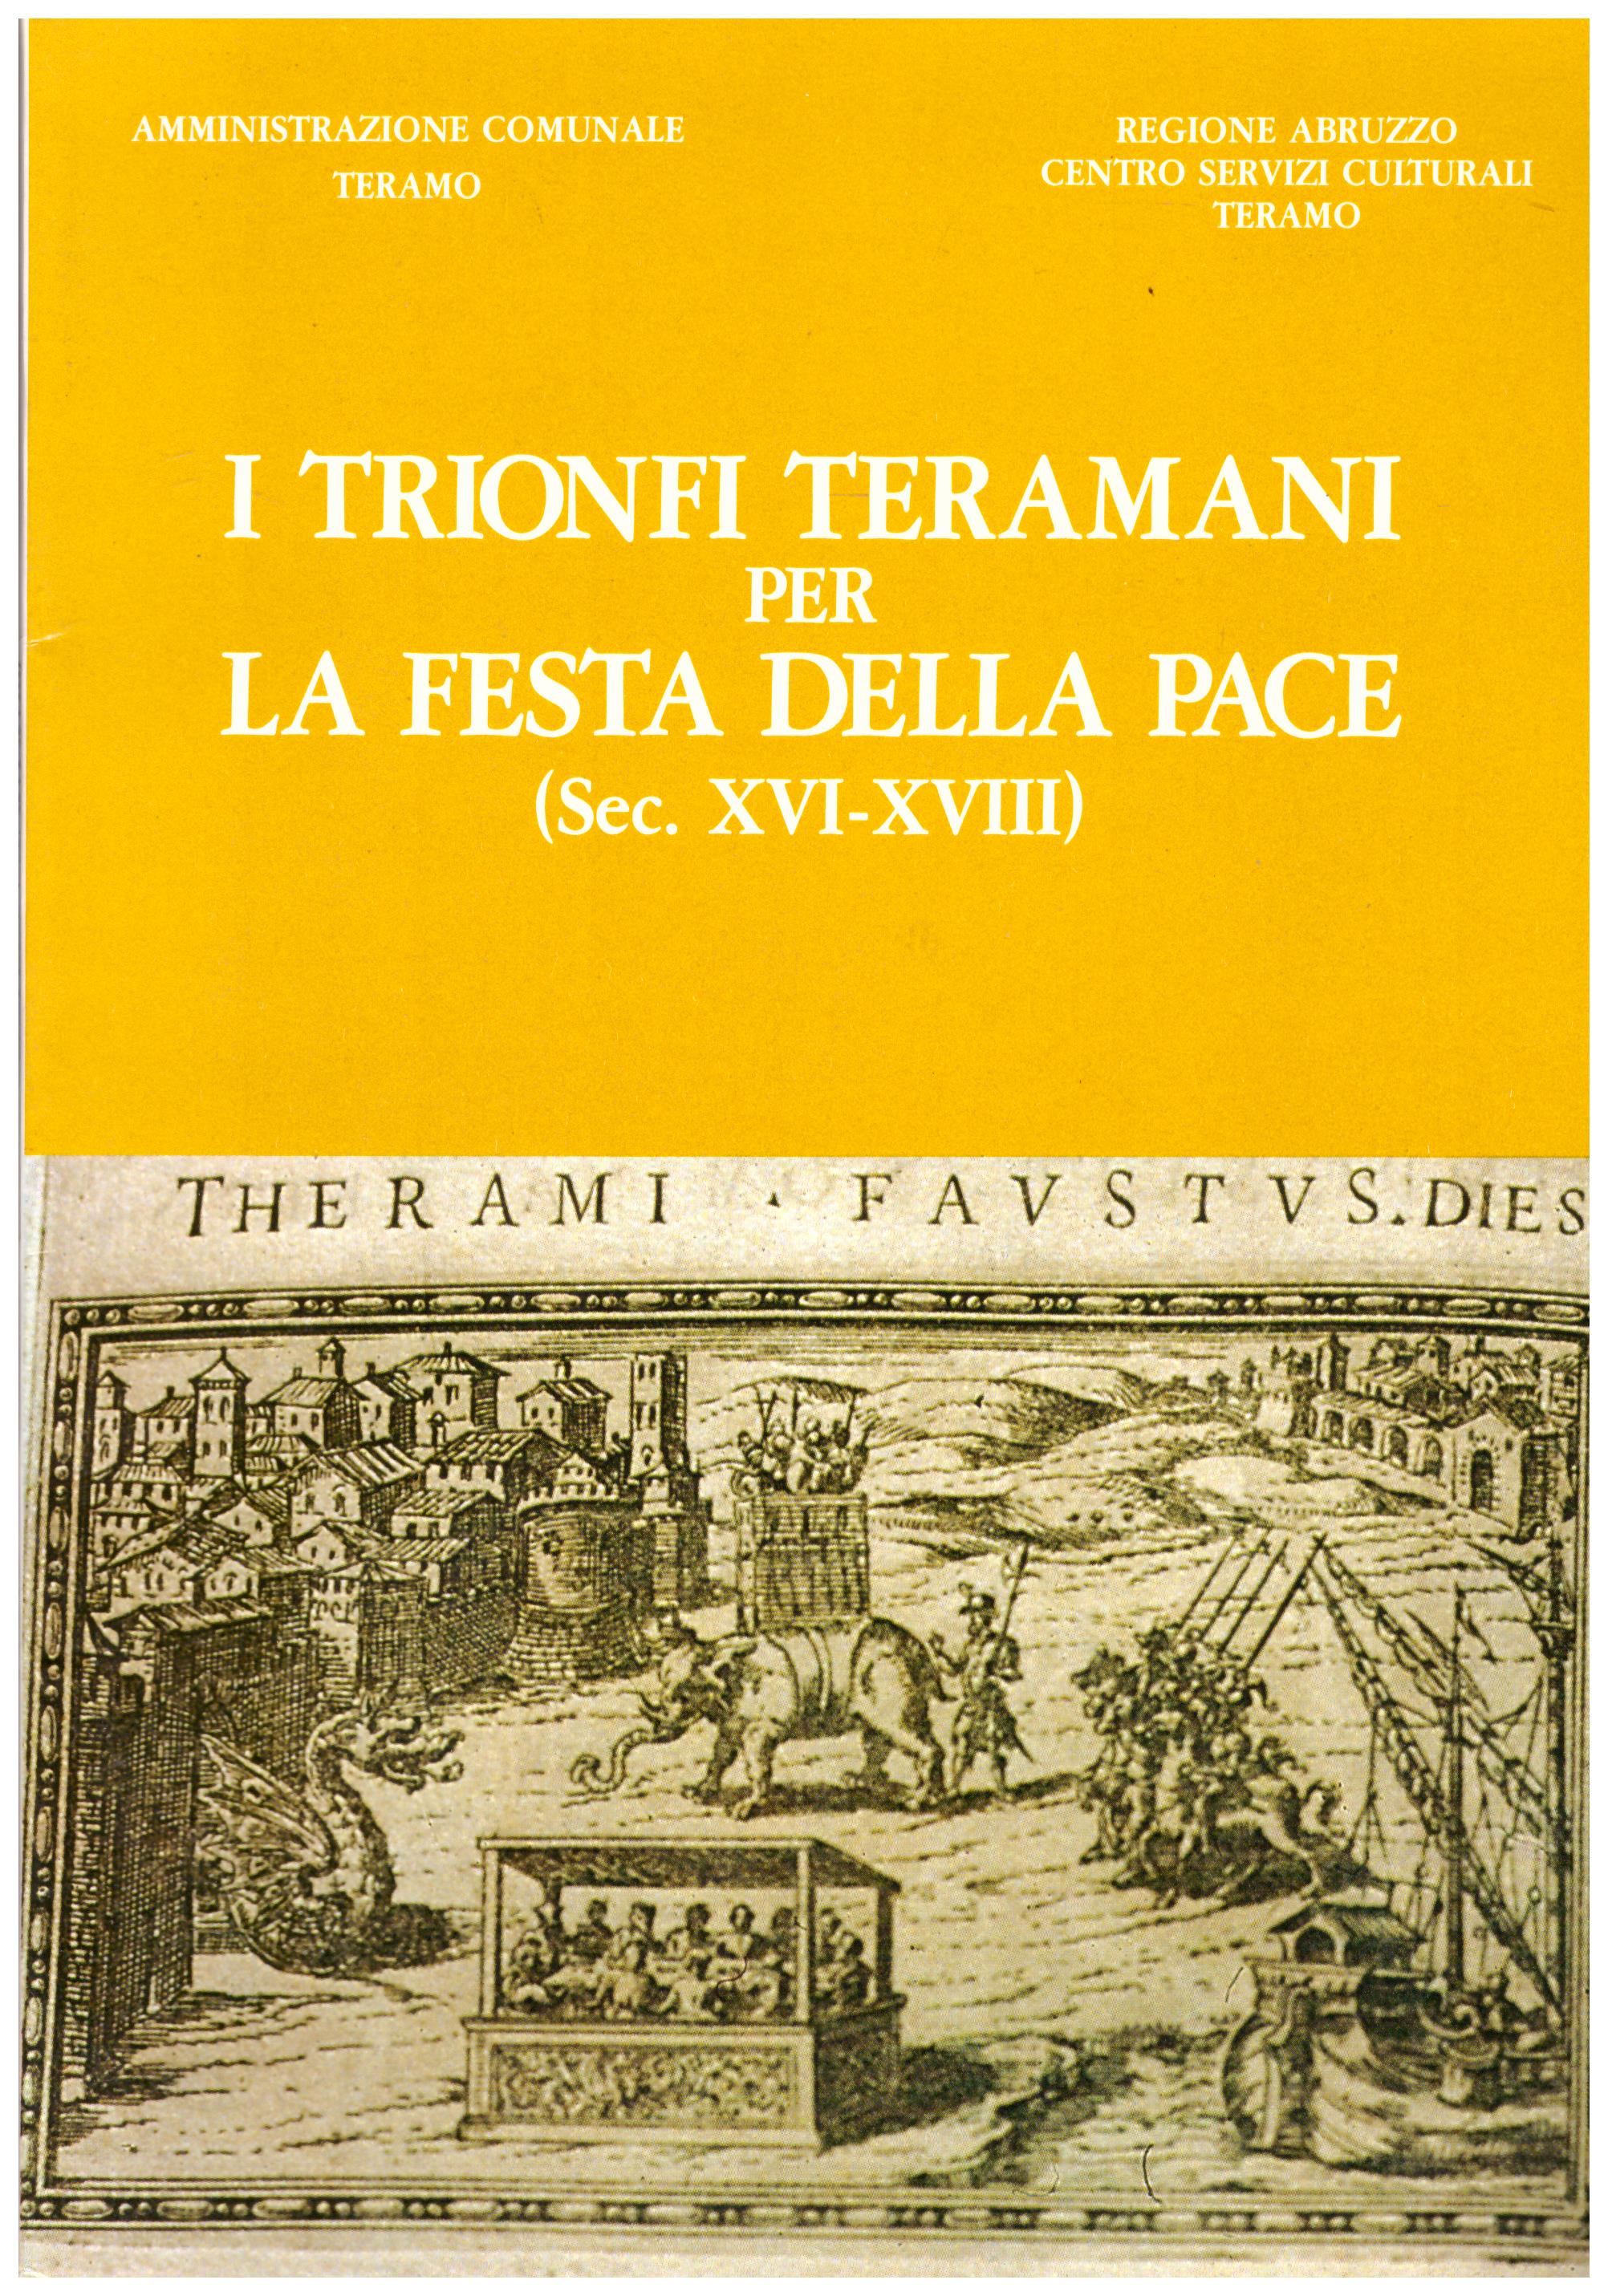 Titolo: I trionfi teramani per la festa della pace  Autore: AA.VV.  Editore: Edigrafital, 1986